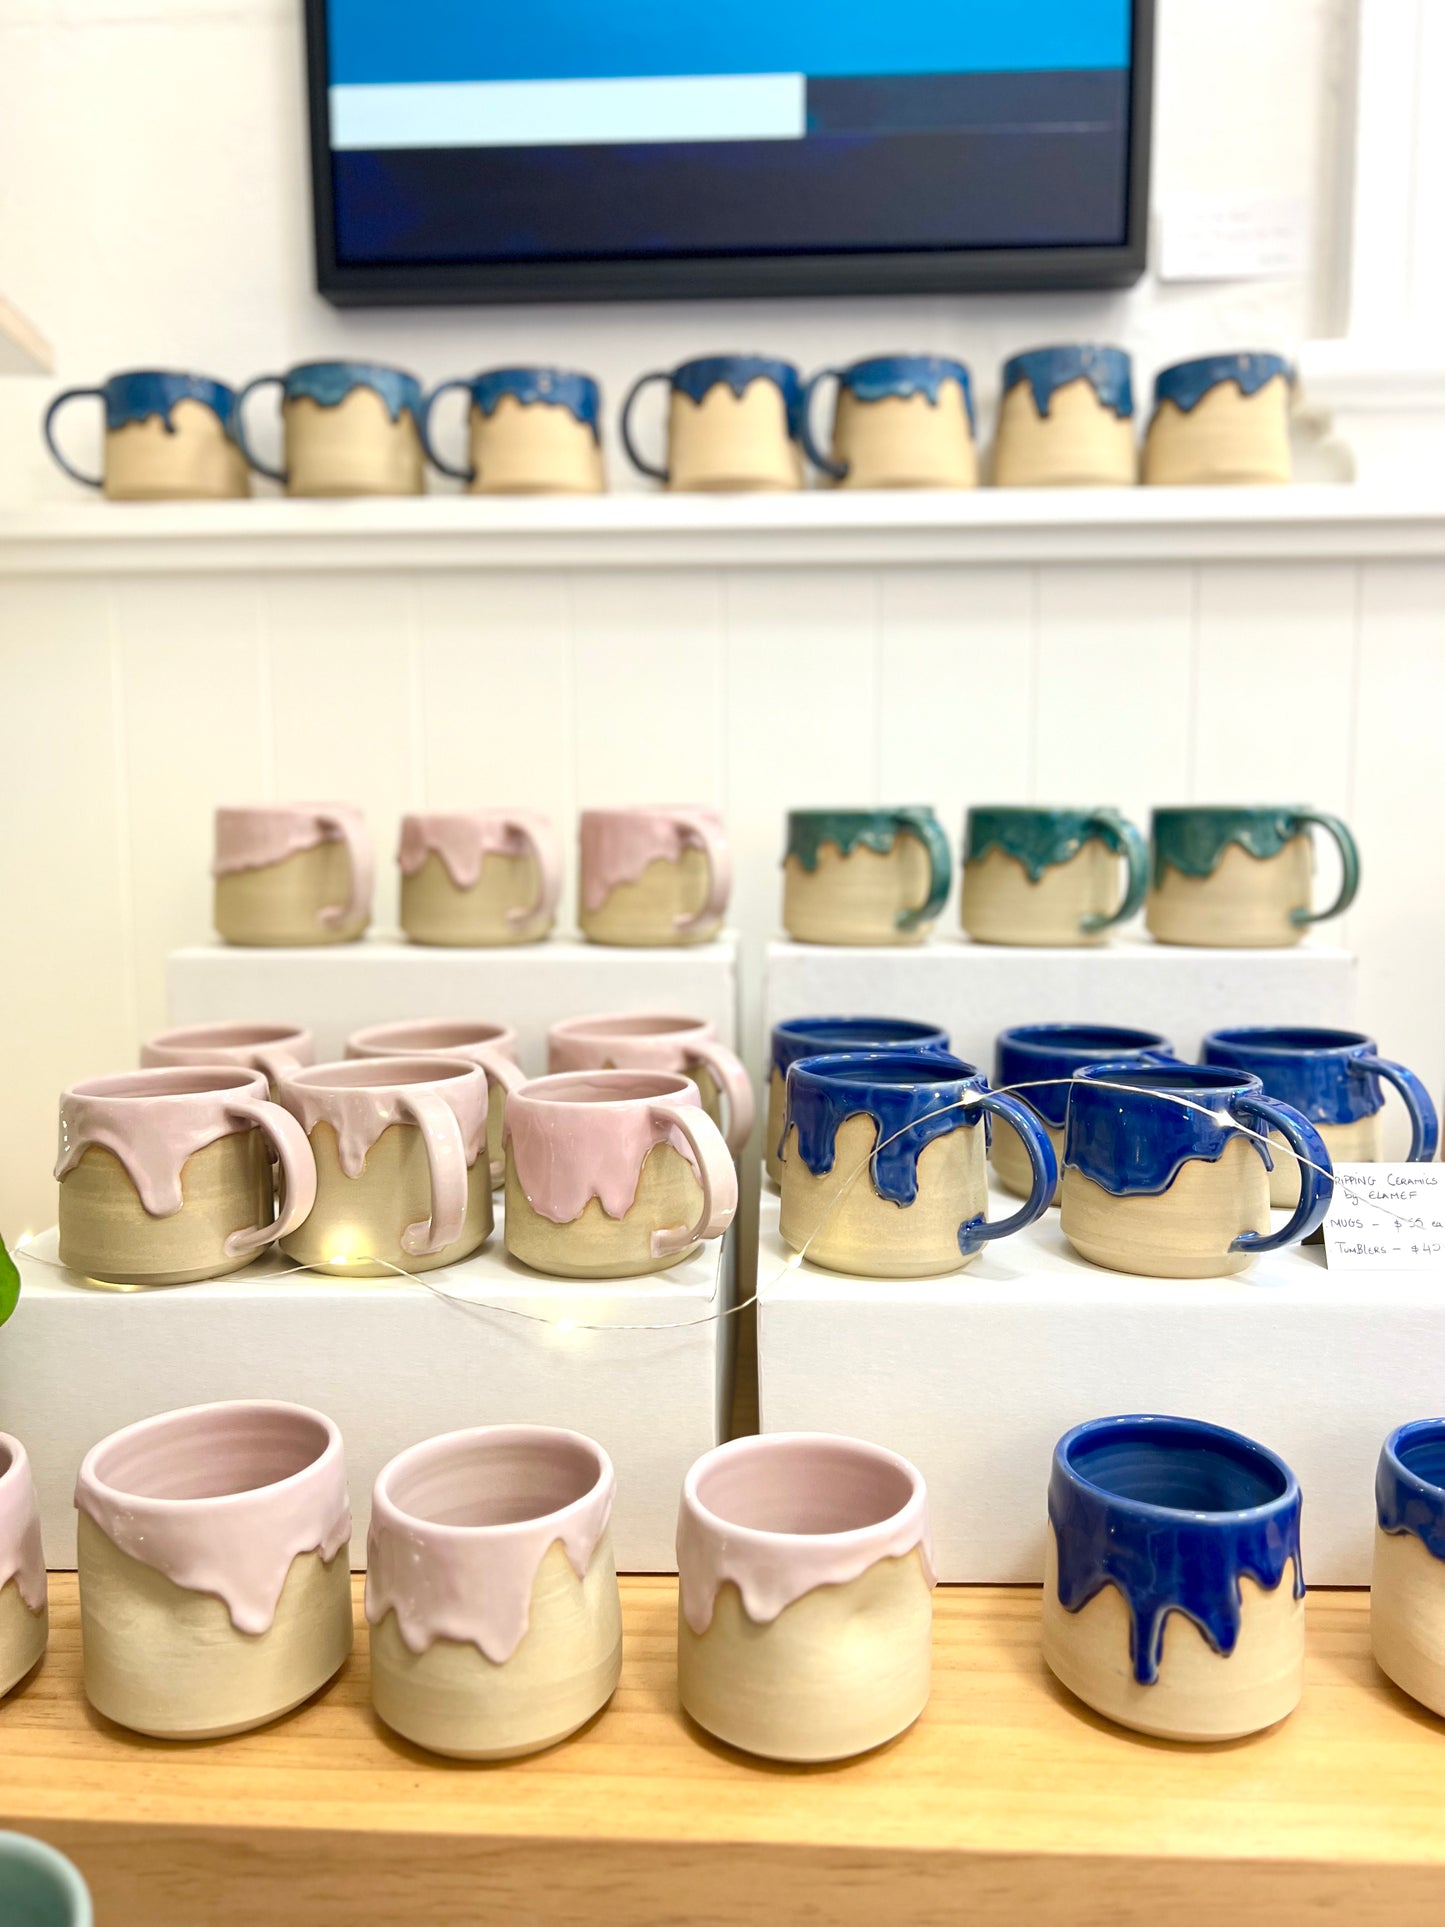 Ceramic "Drippy" Mug - Royal Blue